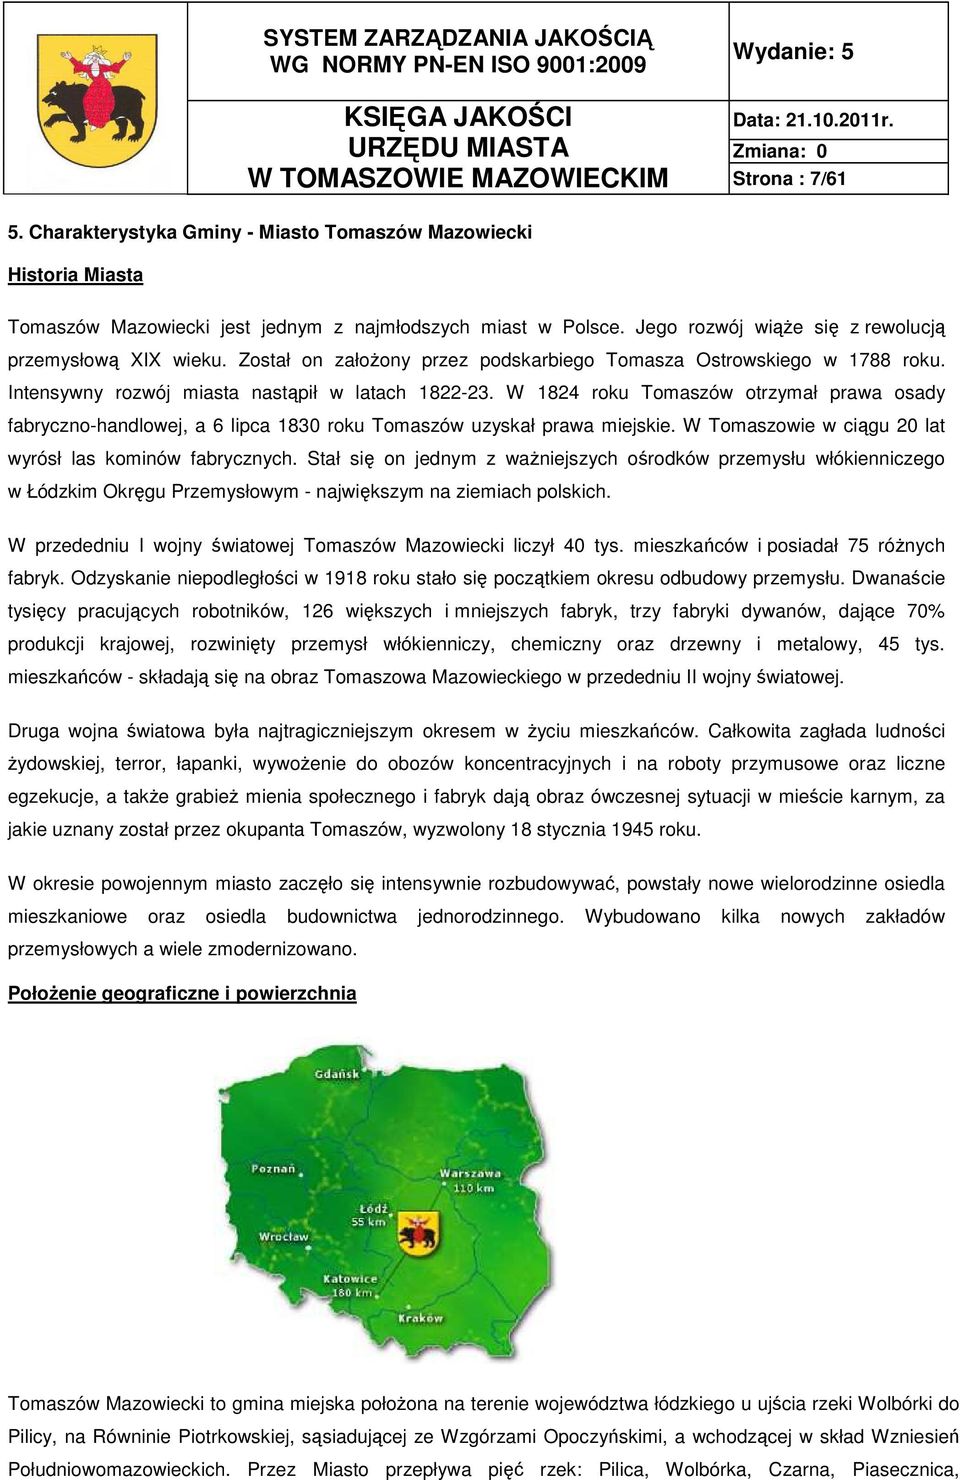 W 1824 roku Tomaszów otrzymał prawa osady fabryczno-handlowej, a 6 lipca 1830 roku Tomaszów uzyskał prawa miejskie. W Tomaszowie w ciągu 20 lat wyrósł las kominów fabrycznych.